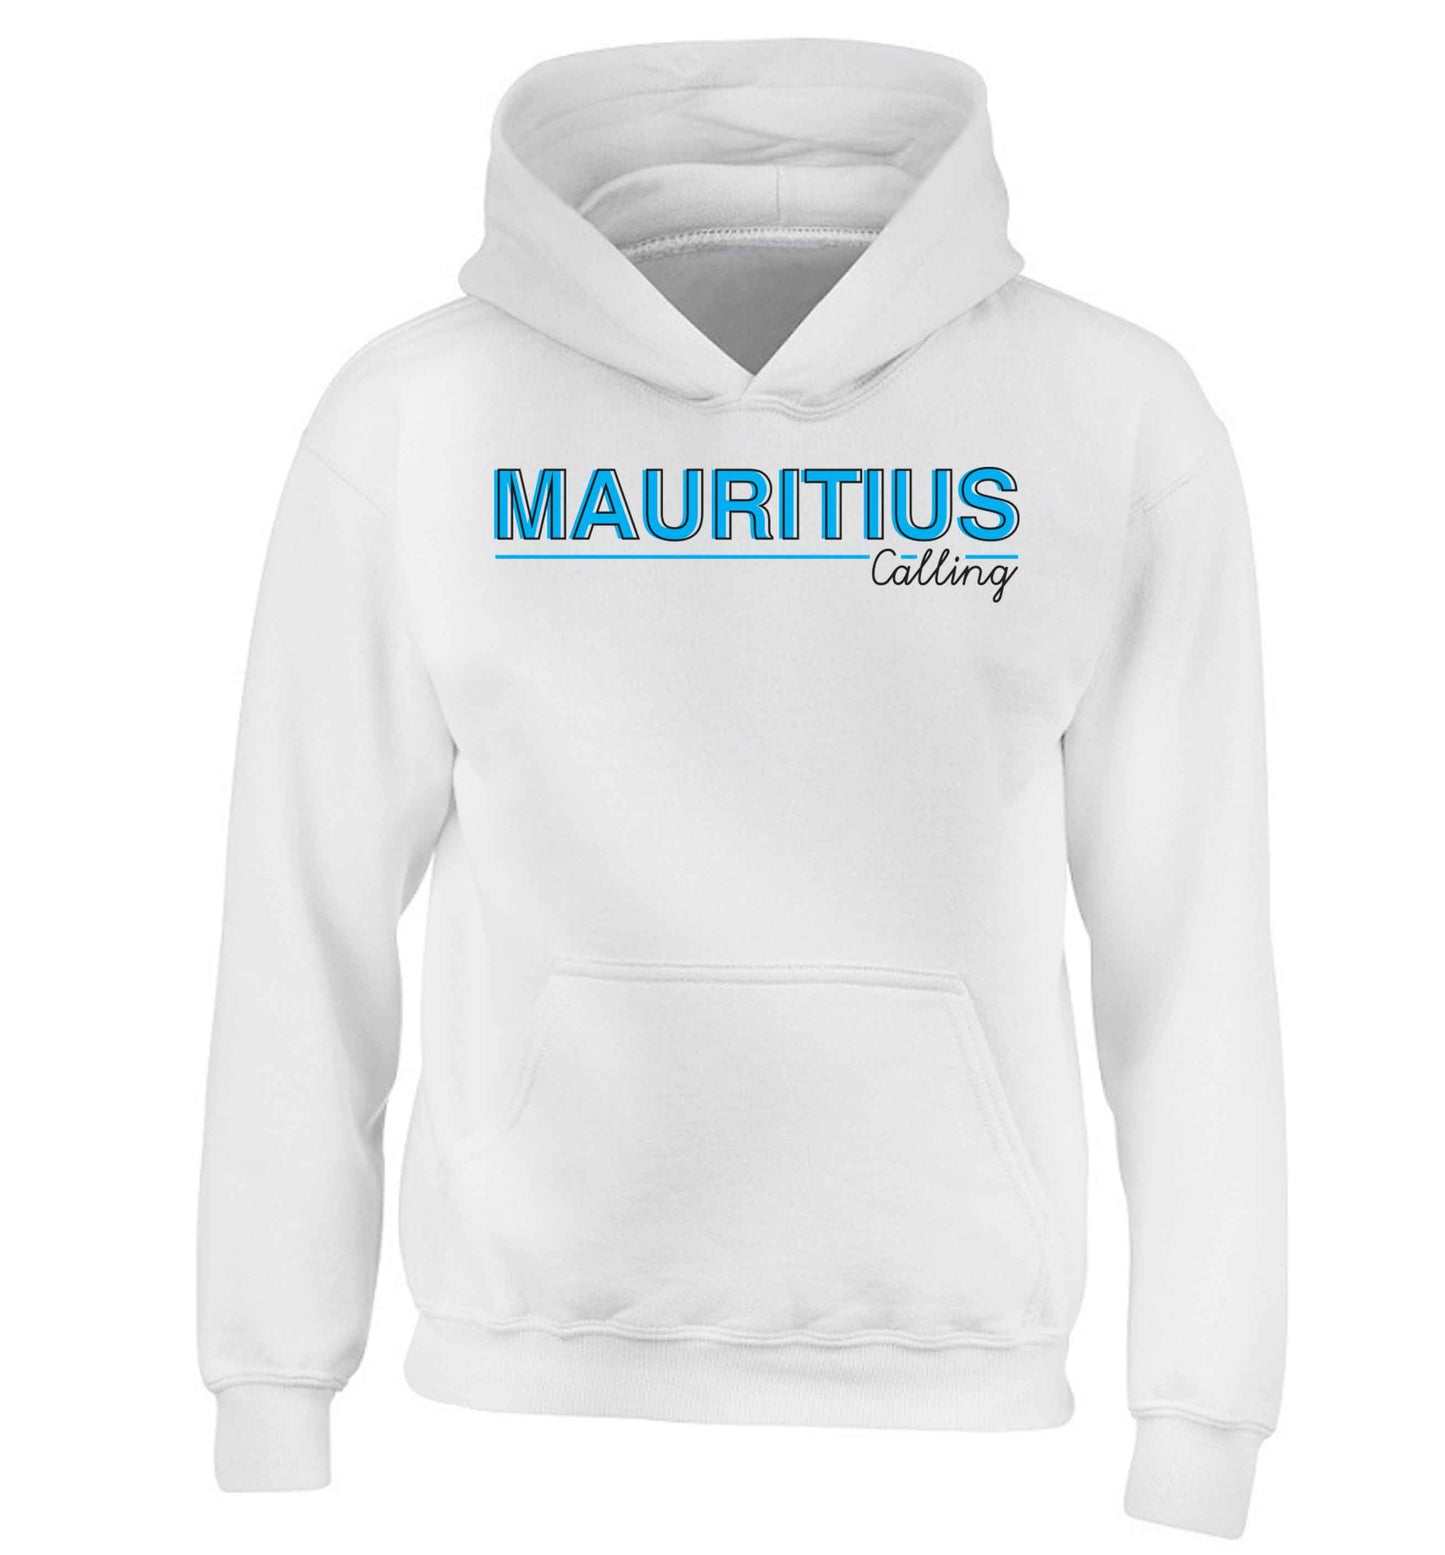 Mauritius calling children's white hoodie 12-13 Years